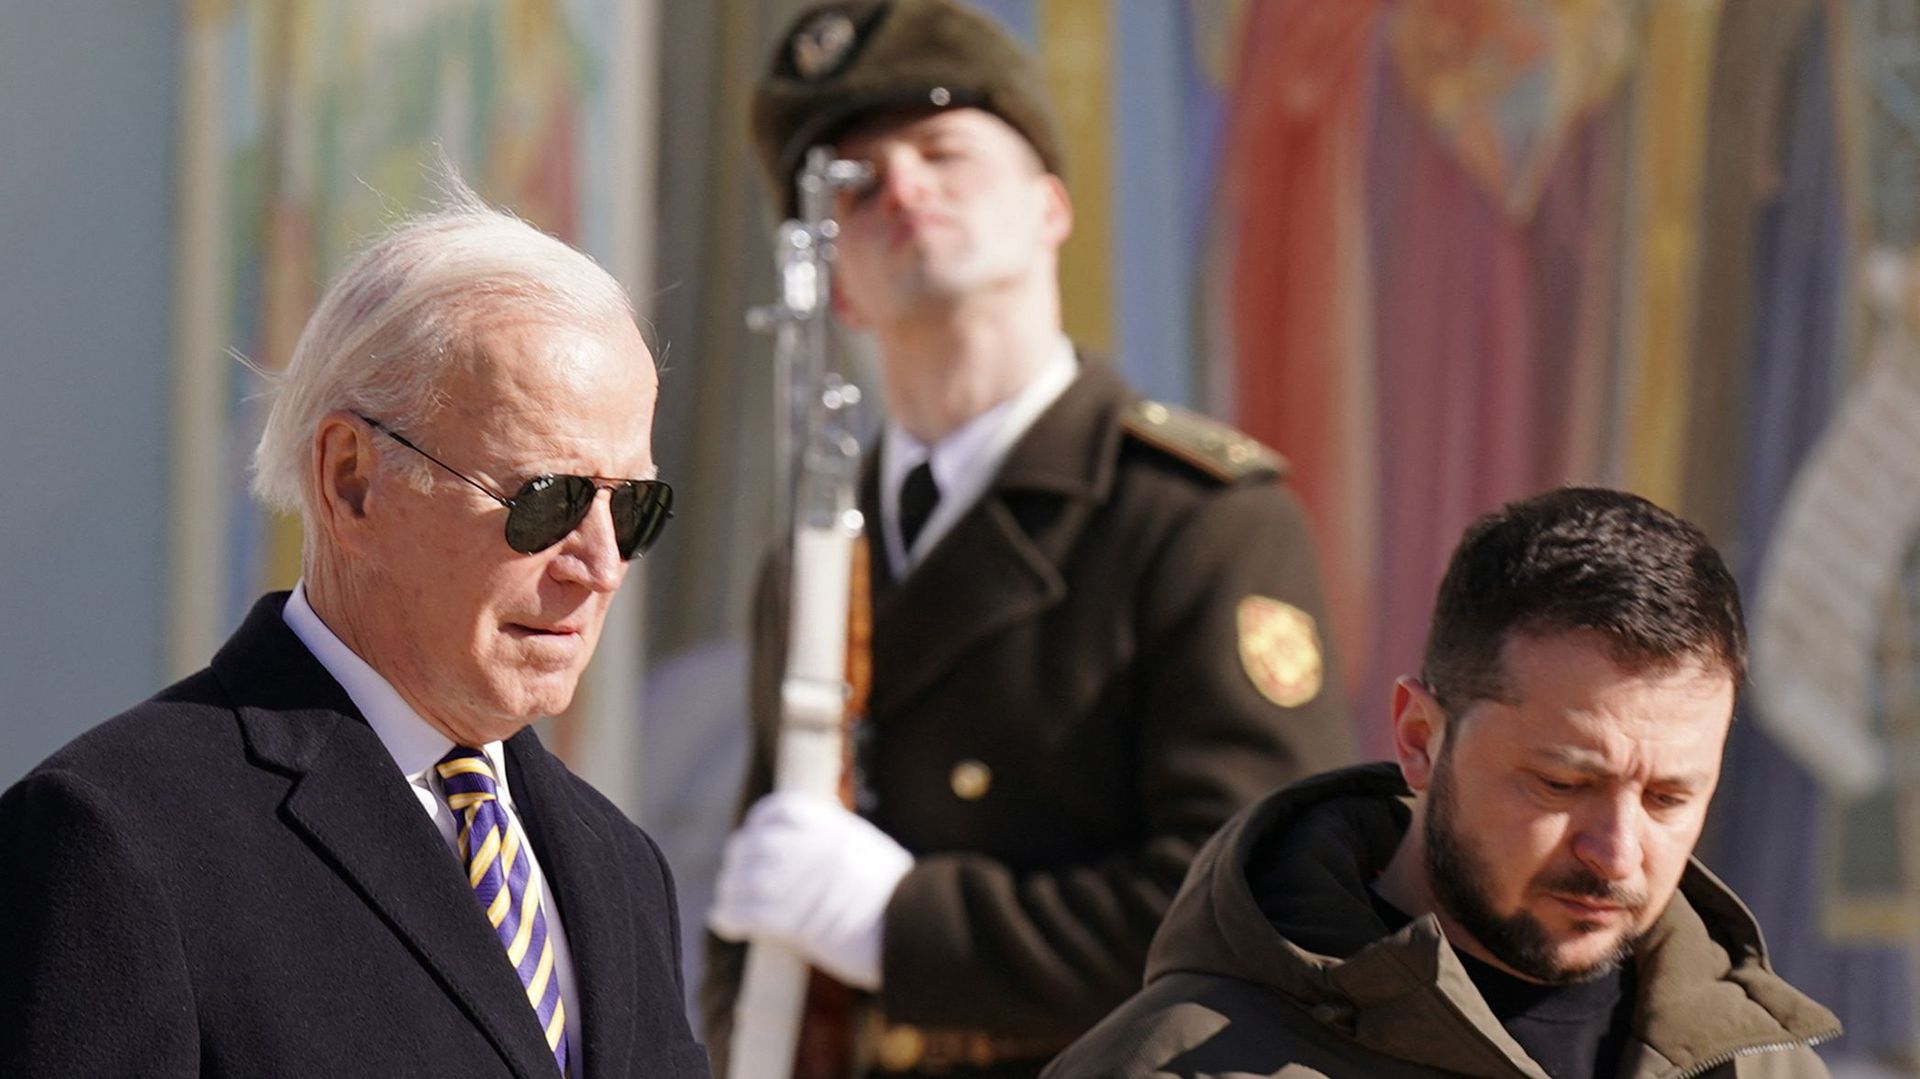 Le président américain Joe Biden (à gauche) marche à côté du président ukrainien Volodymyr Zelensky (à droite) devant une fresque religieuse à la cathédrale Saint-Michel à dôme doré, alors qu'il arrive pour une visite à Kiev le 20 février 2023.